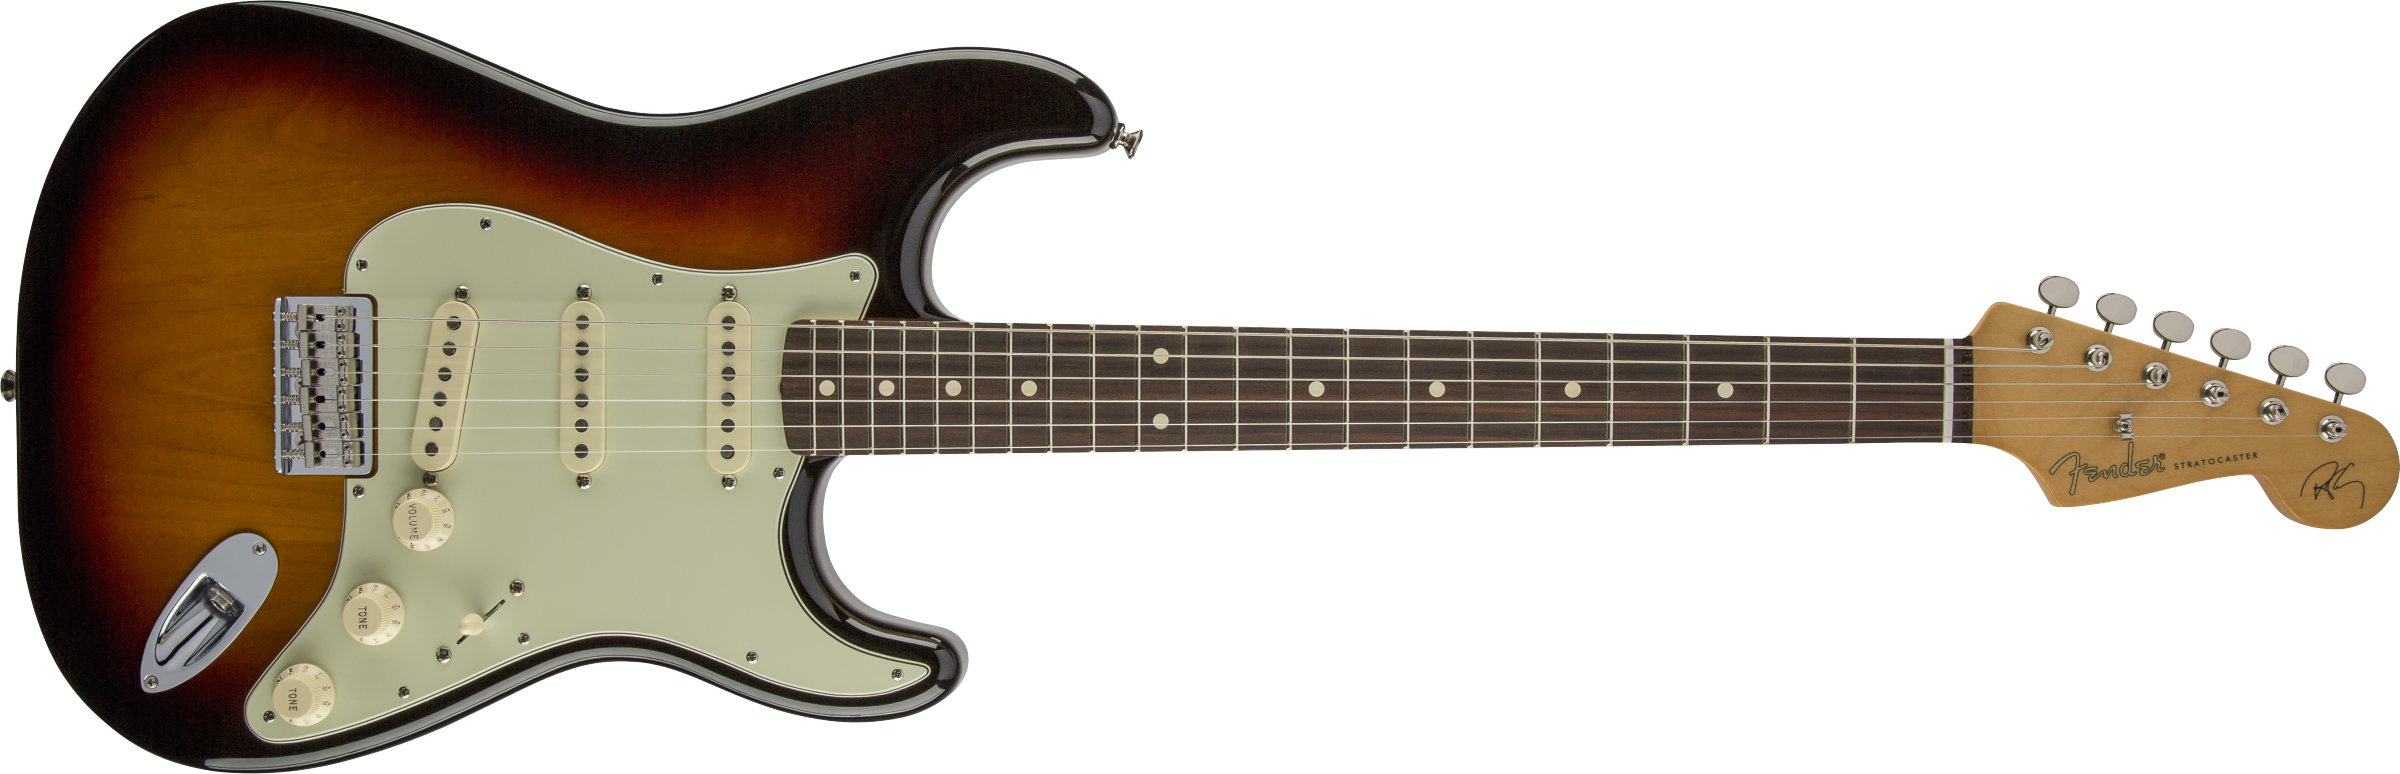 Fender® Robert Cray Stratocaster®, Rosewood Fingerboard, 3-Color Sunburst